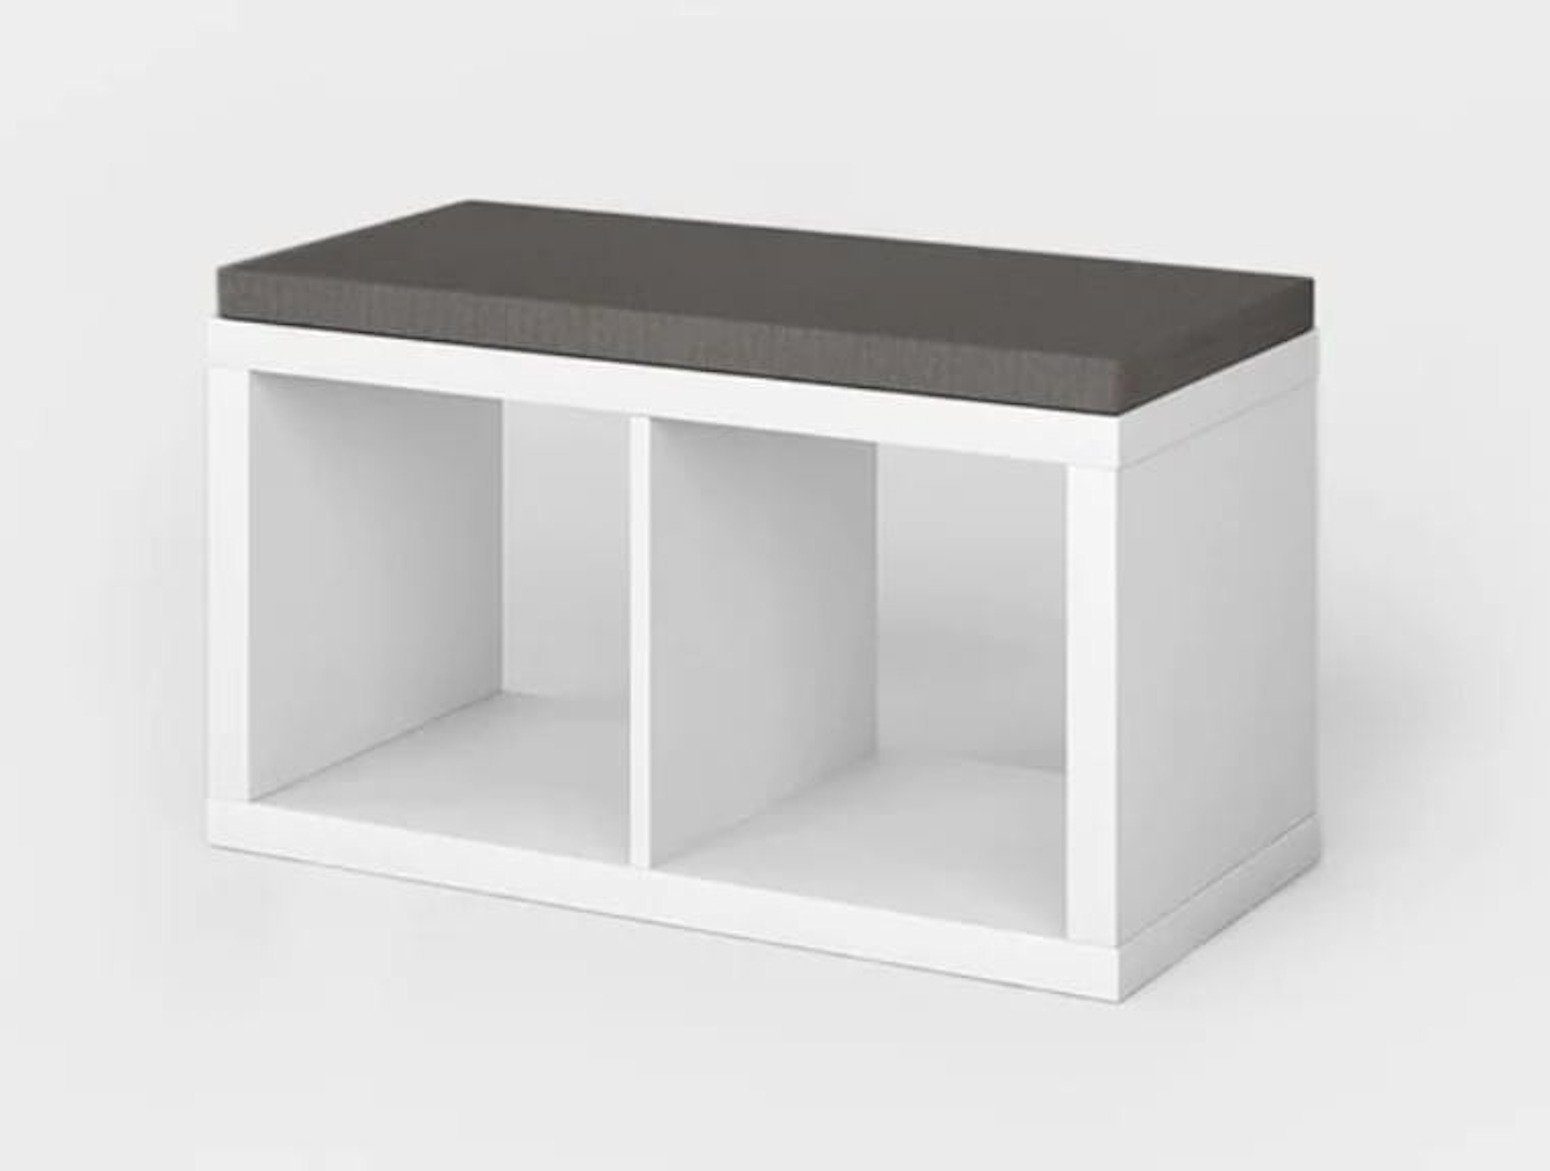 Kühnemuth Polsterauflage Polsterauflage Kalax Sitzauflage kompatibel Regalsystem mit Ikea